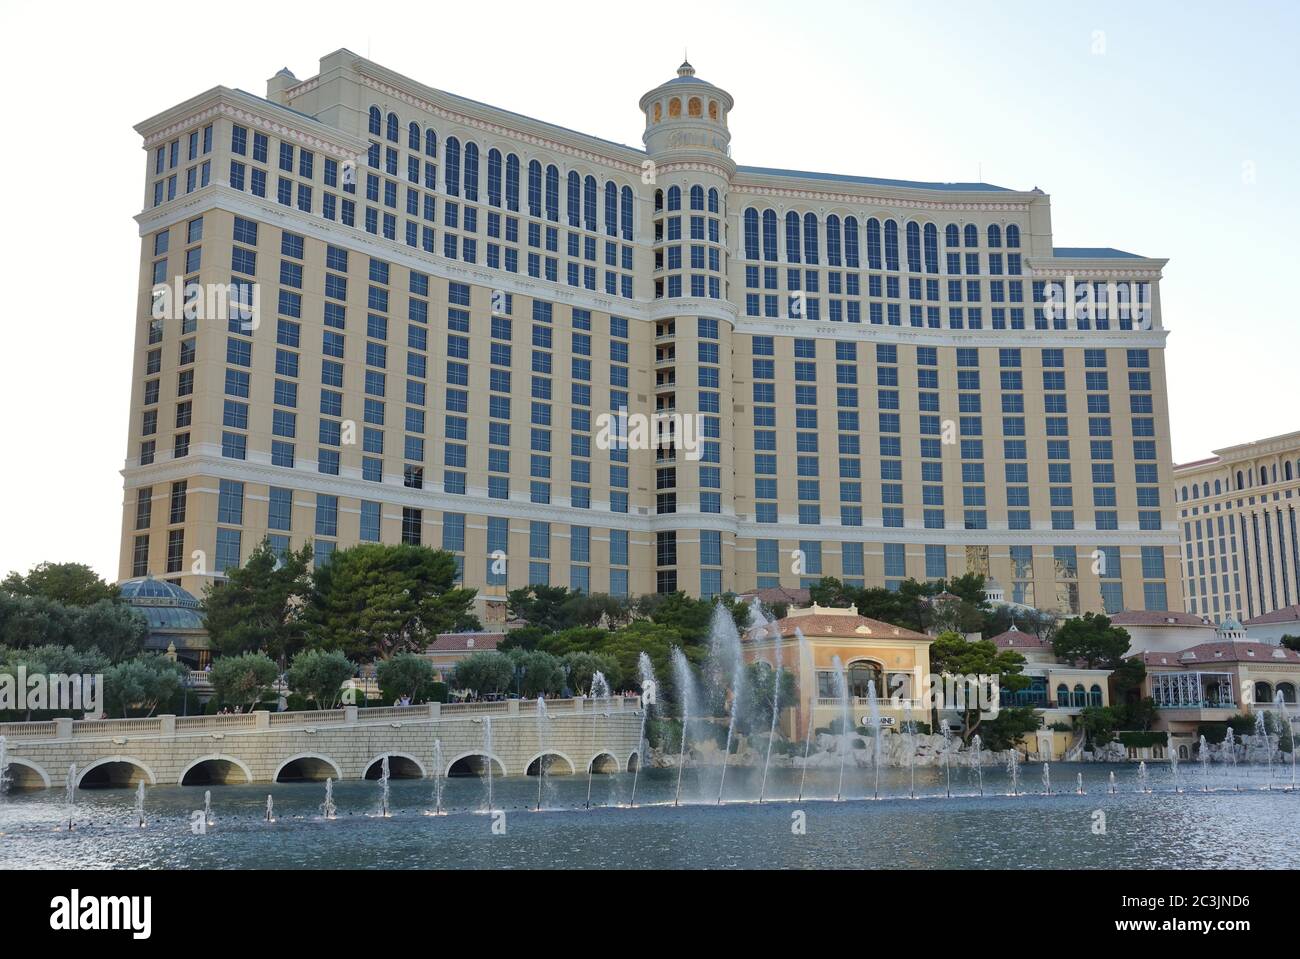 LAS VEGAS, NV – 6. JUNI 2020 – Außenansicht des Bellagio, einem Luxushotel und Kasino am Strip in der Innenstadt von Las Vegas, USA. Stockfoto